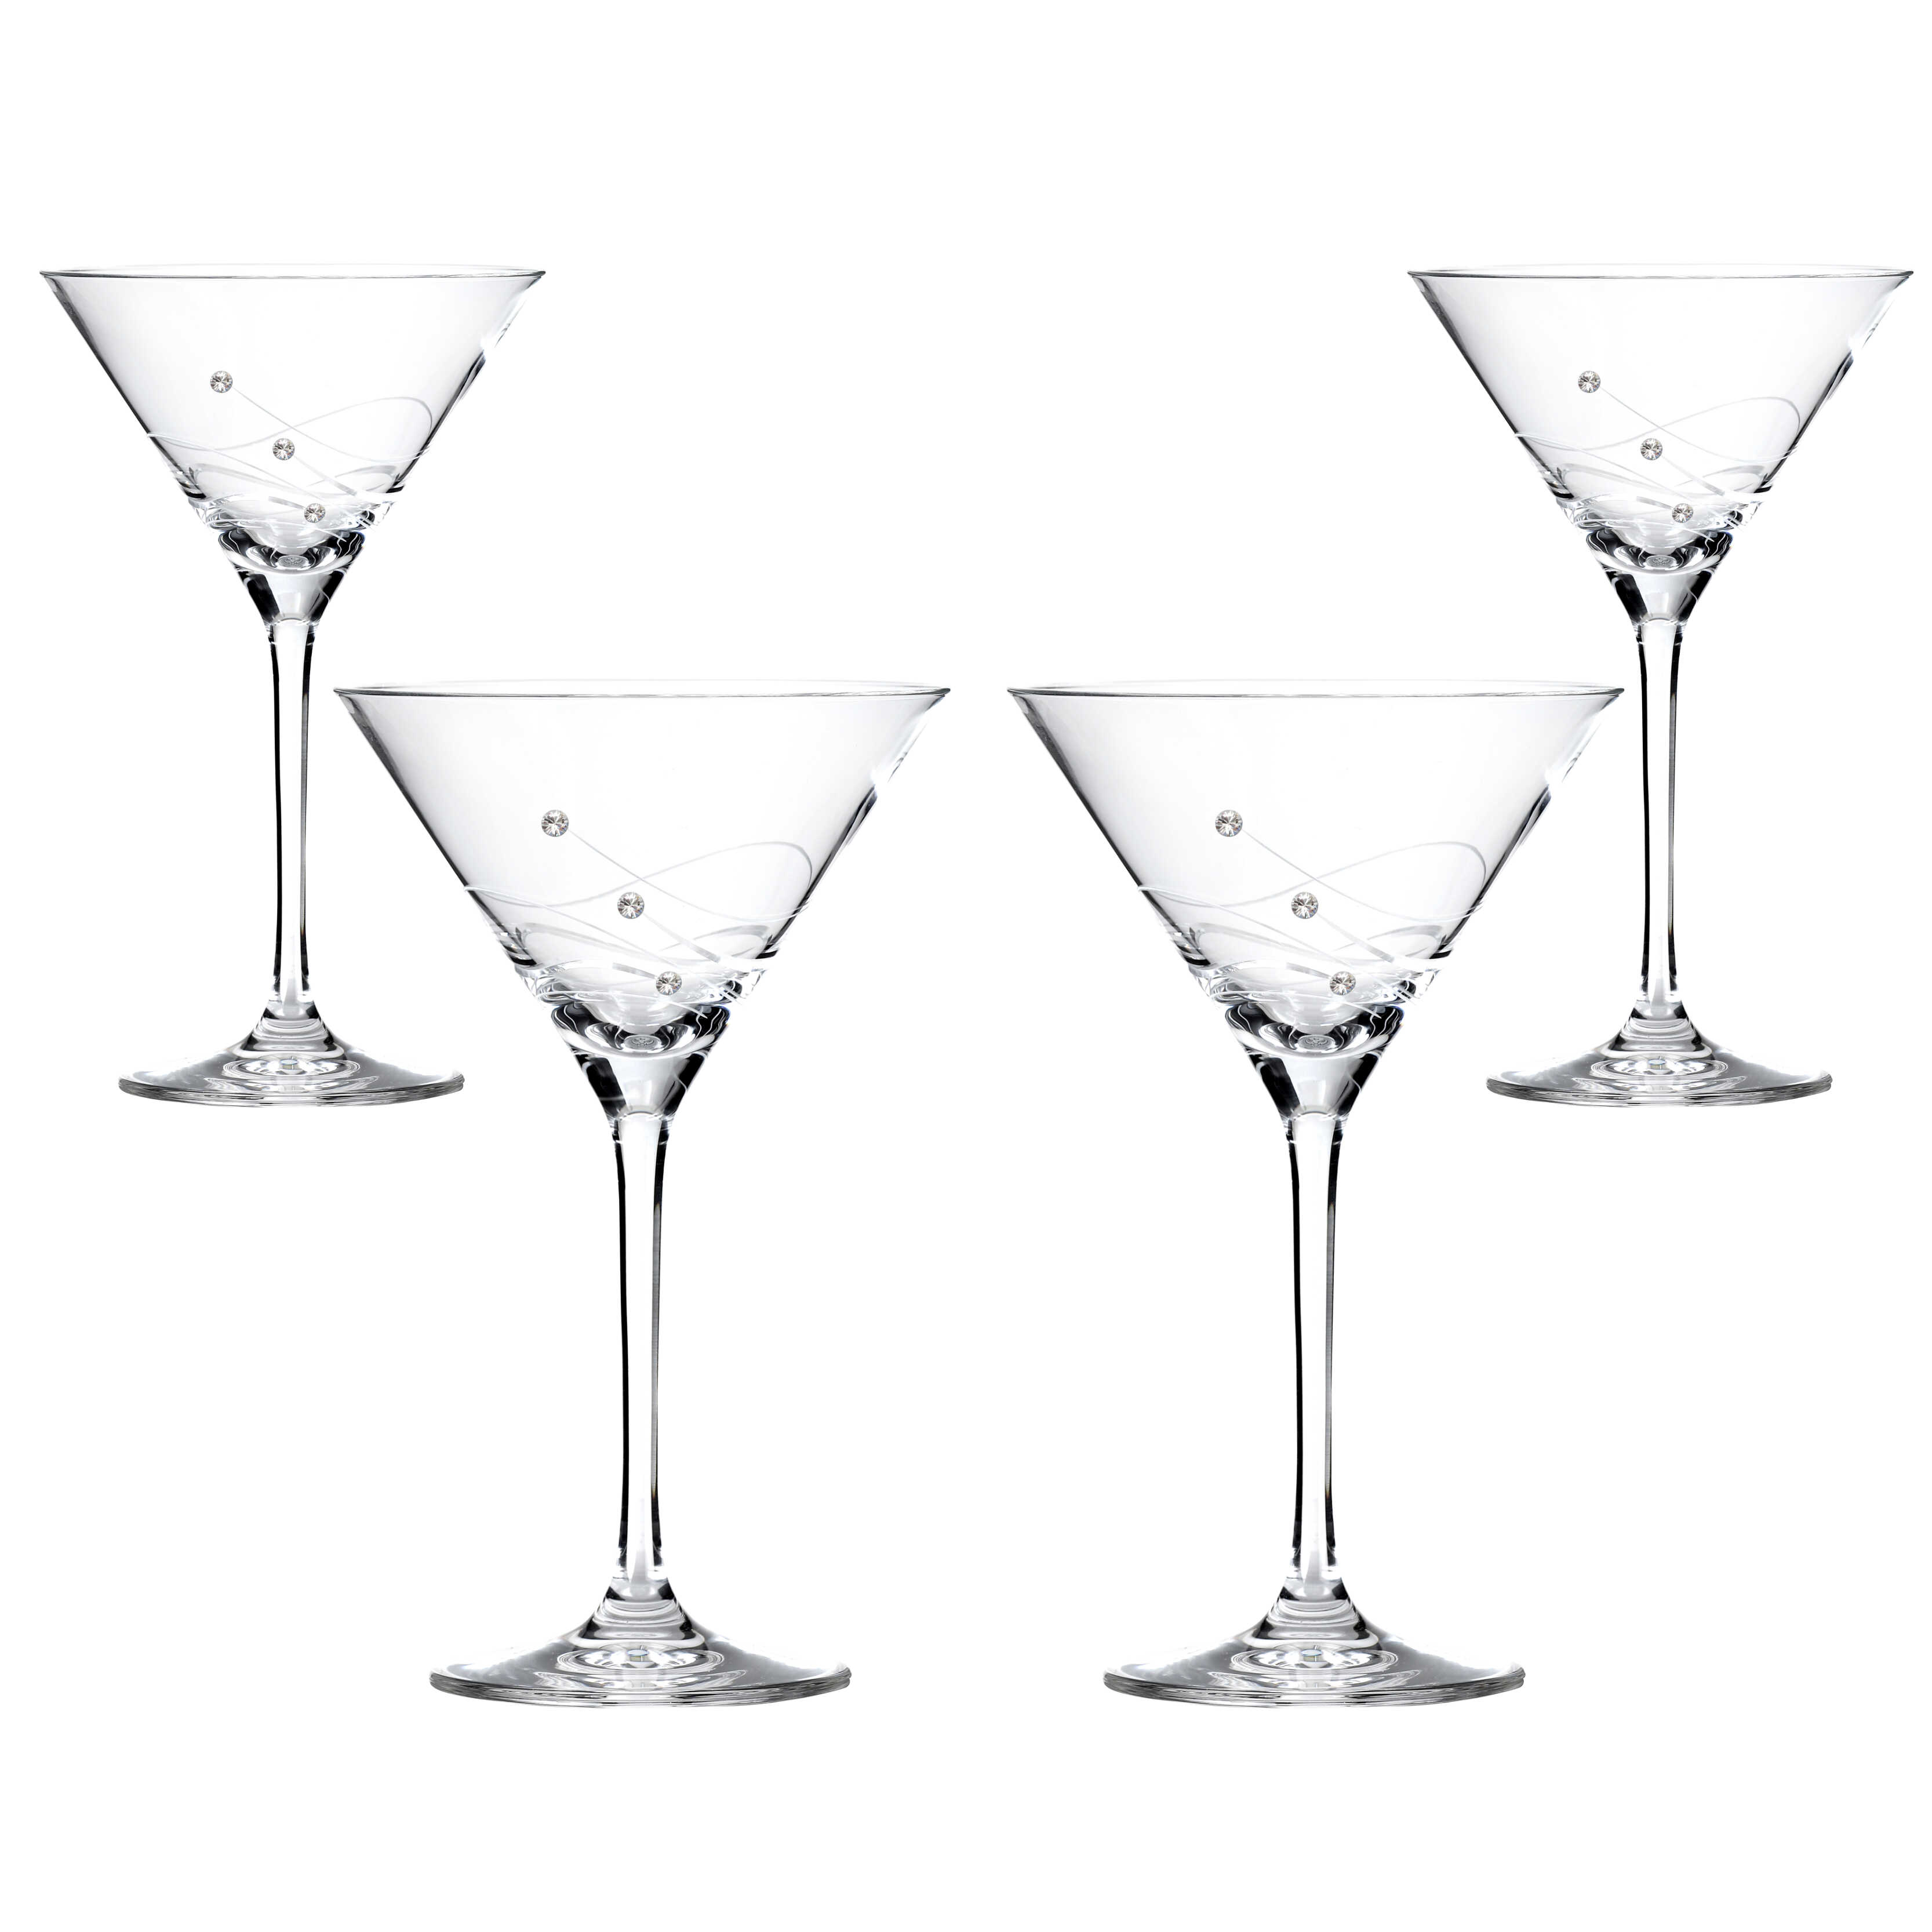 Billede af Clio Cocktailglas med Swarovski krystaller - 4 stk.